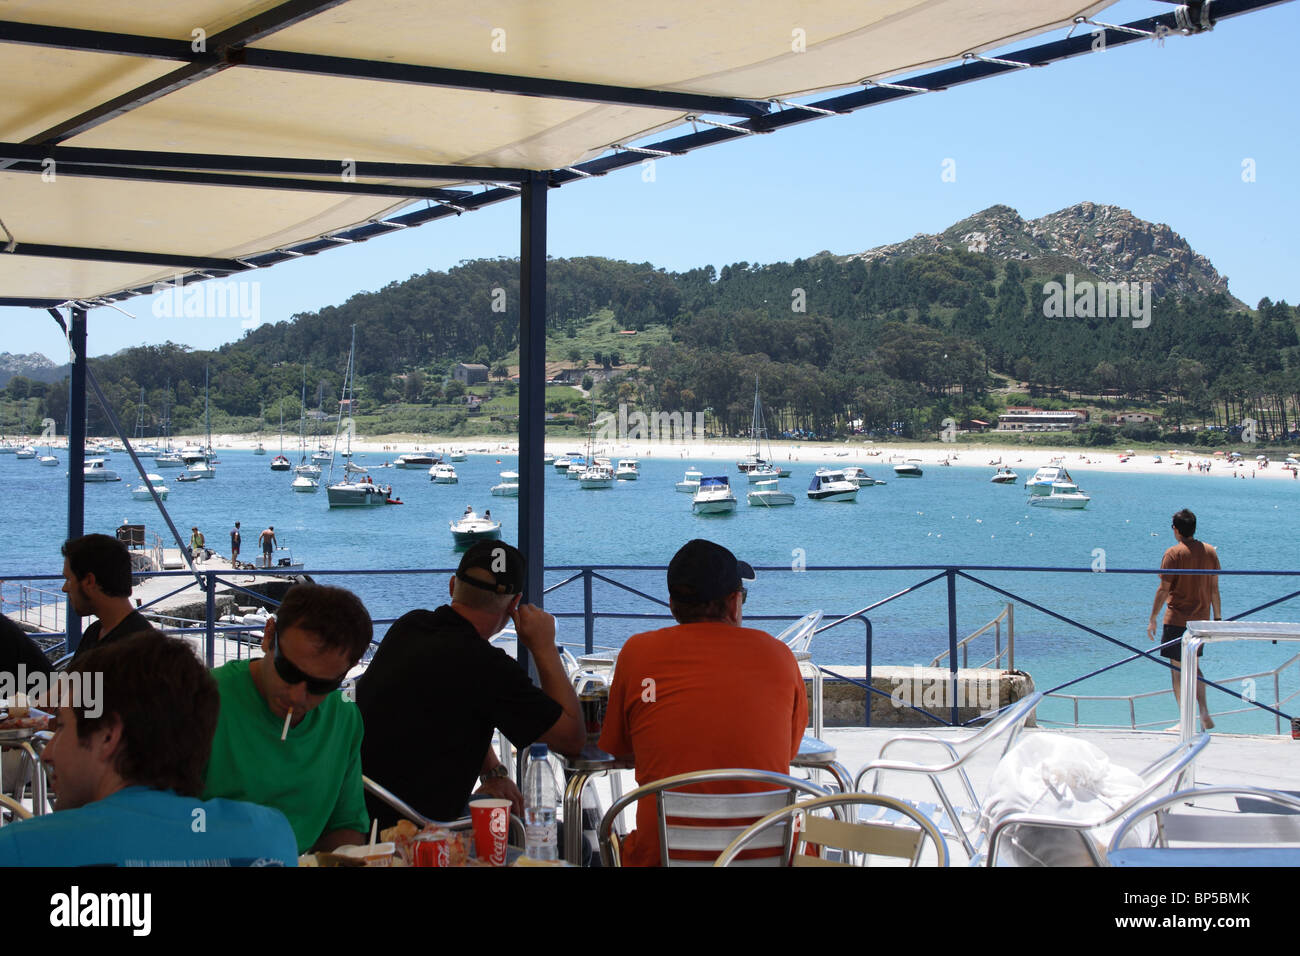 La gente en las mesas de cafetería al aire libre del restaurante en la playa, Isla de Monte Faro, Islas Cíes, Vigo, Galicia, España, playa y barcos Foto de stock